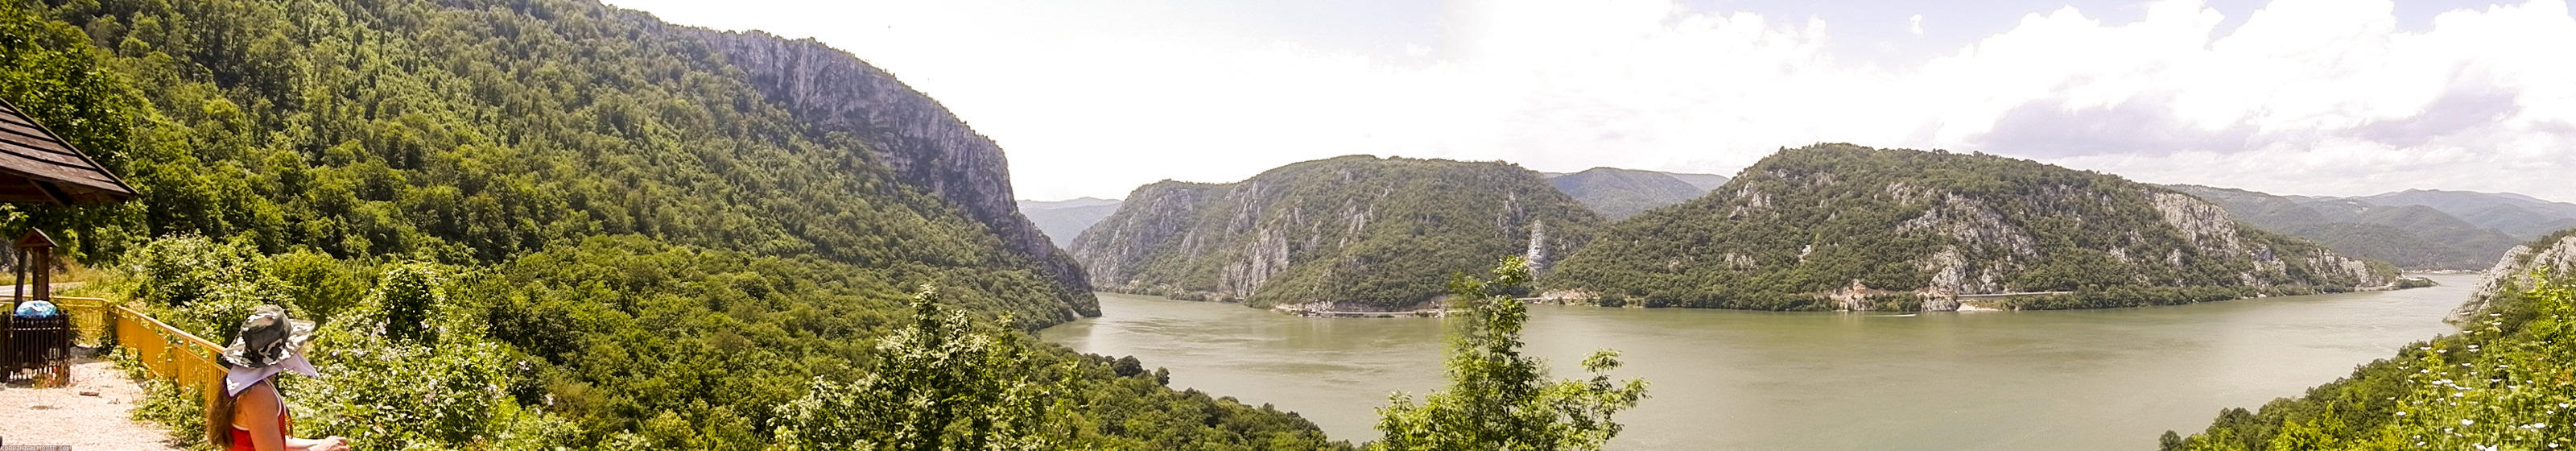 ﻿Das Eiserne Tor ist einer der landschaftlich spannendsten Donauabschnitte.